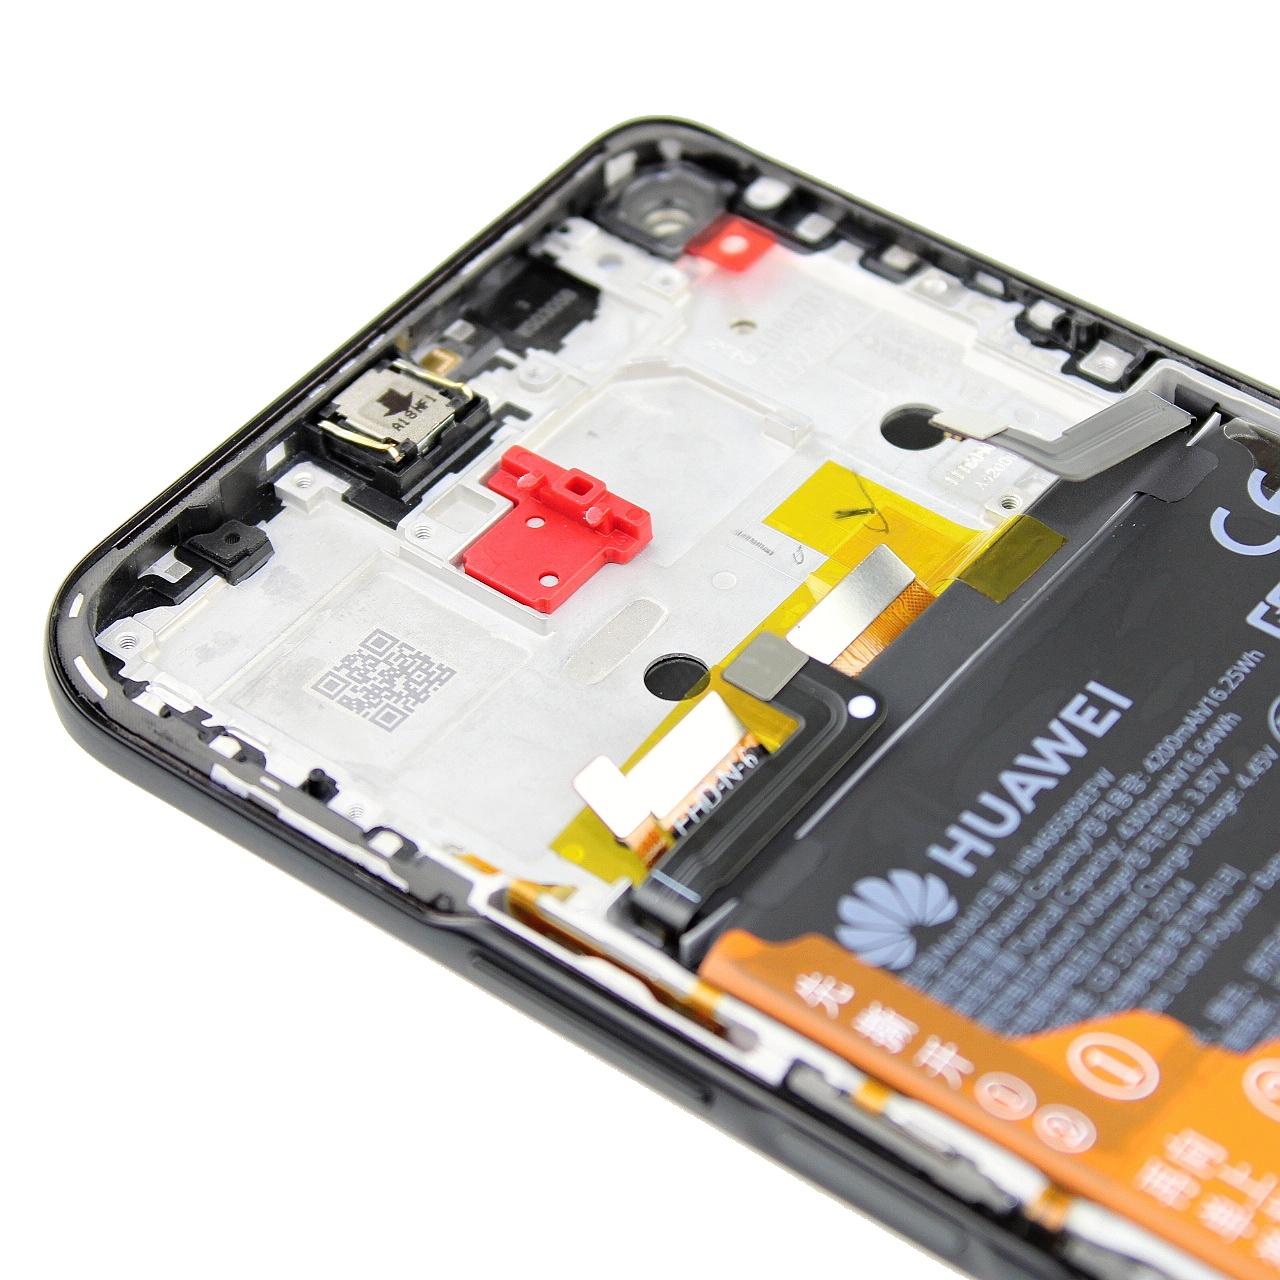 Oryginalny Wyświetlacz LCD + Ekran dotykowy Huawei Nova 8i czarny